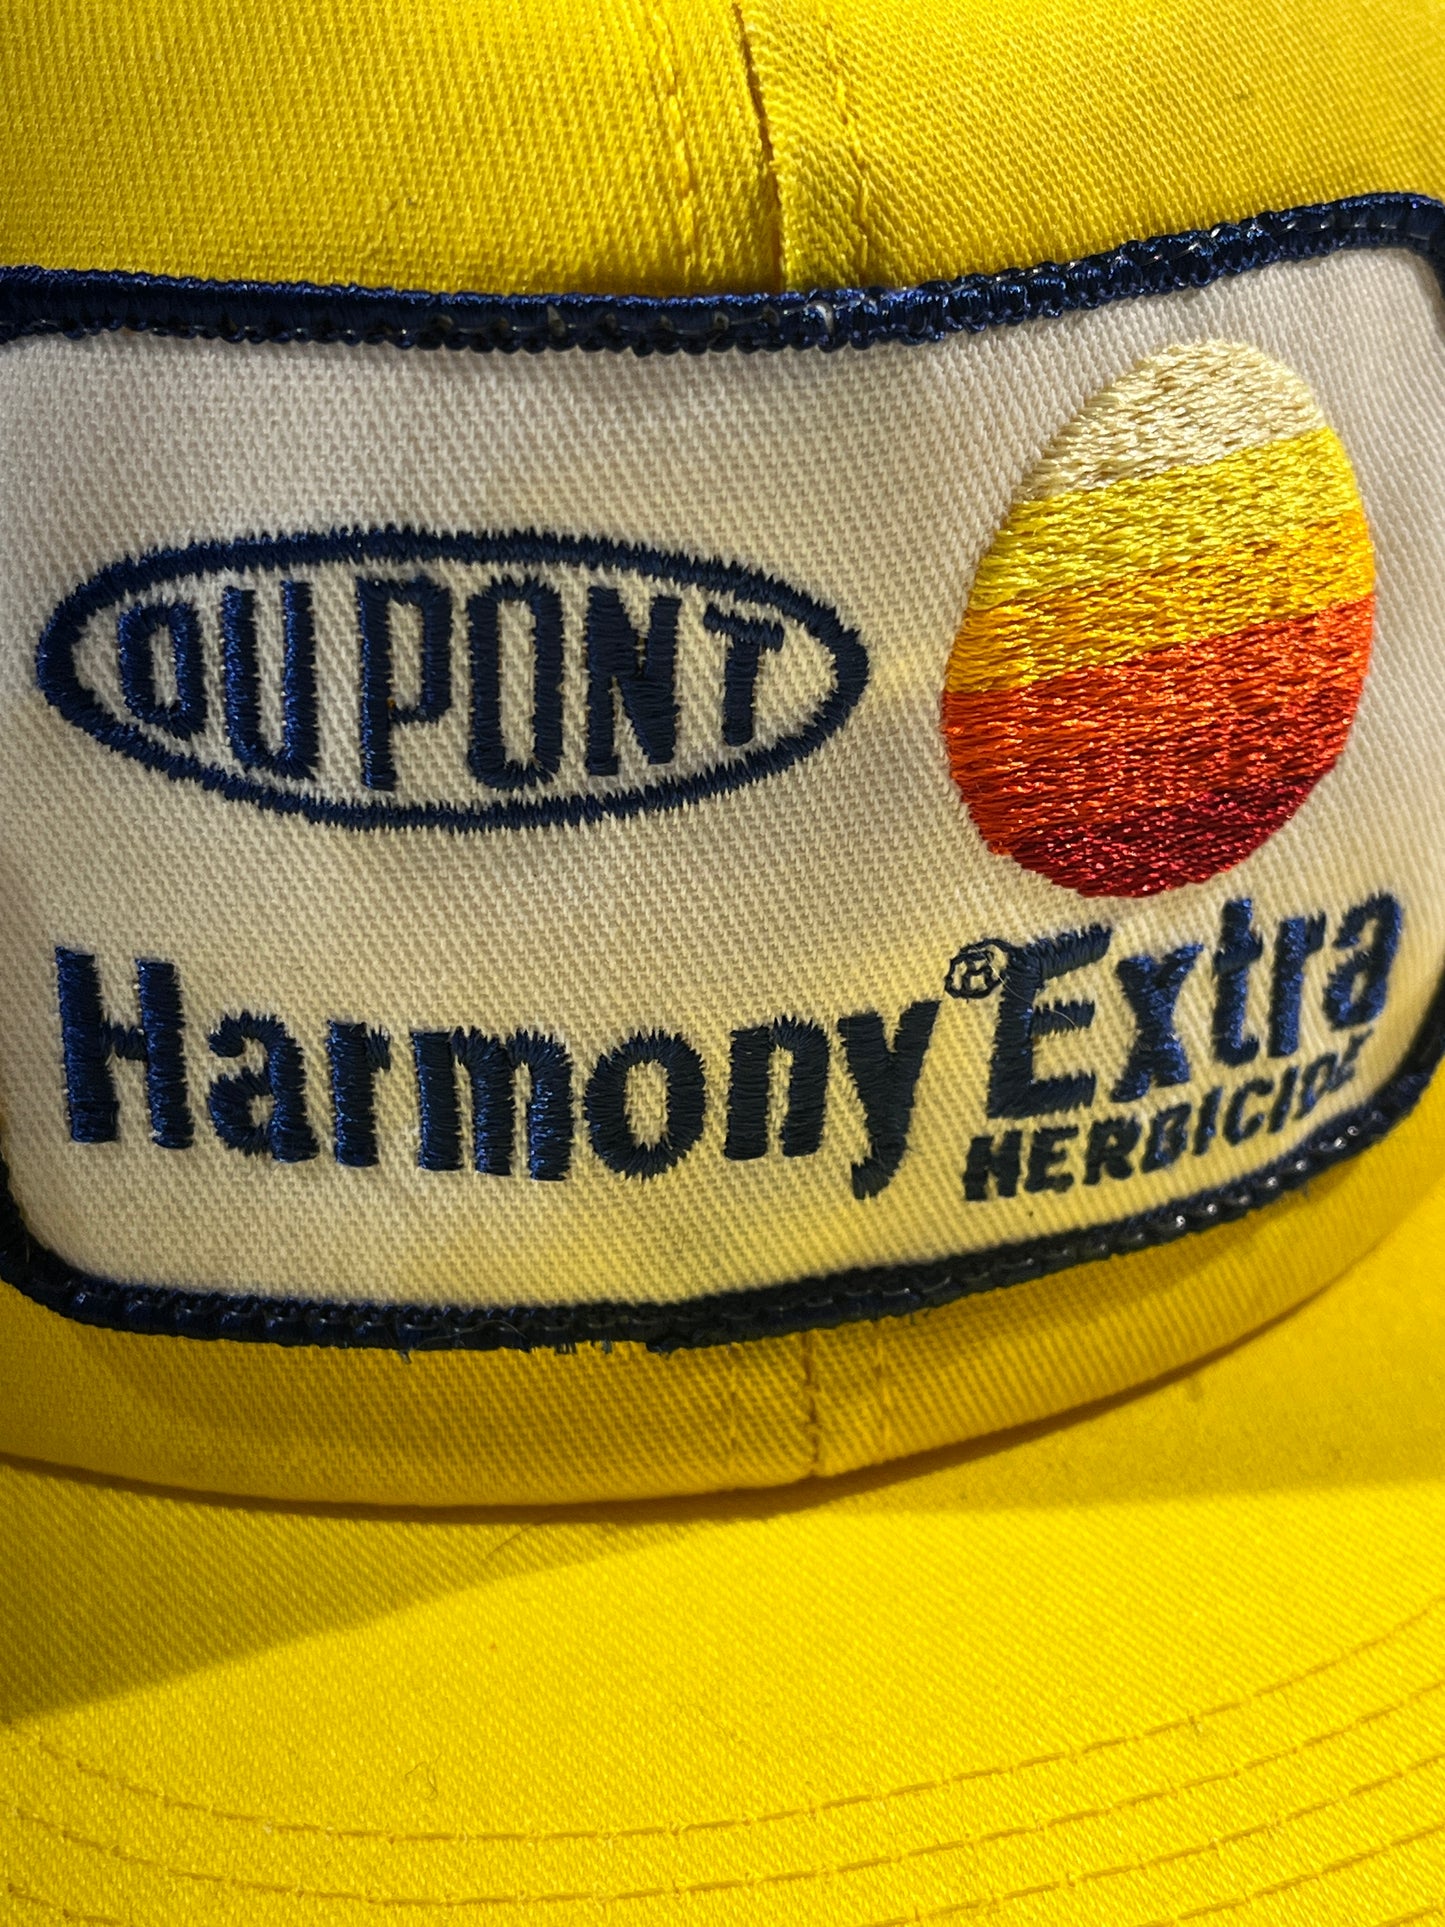 Vintage Dupont Hat Herbicide Snapback Patch